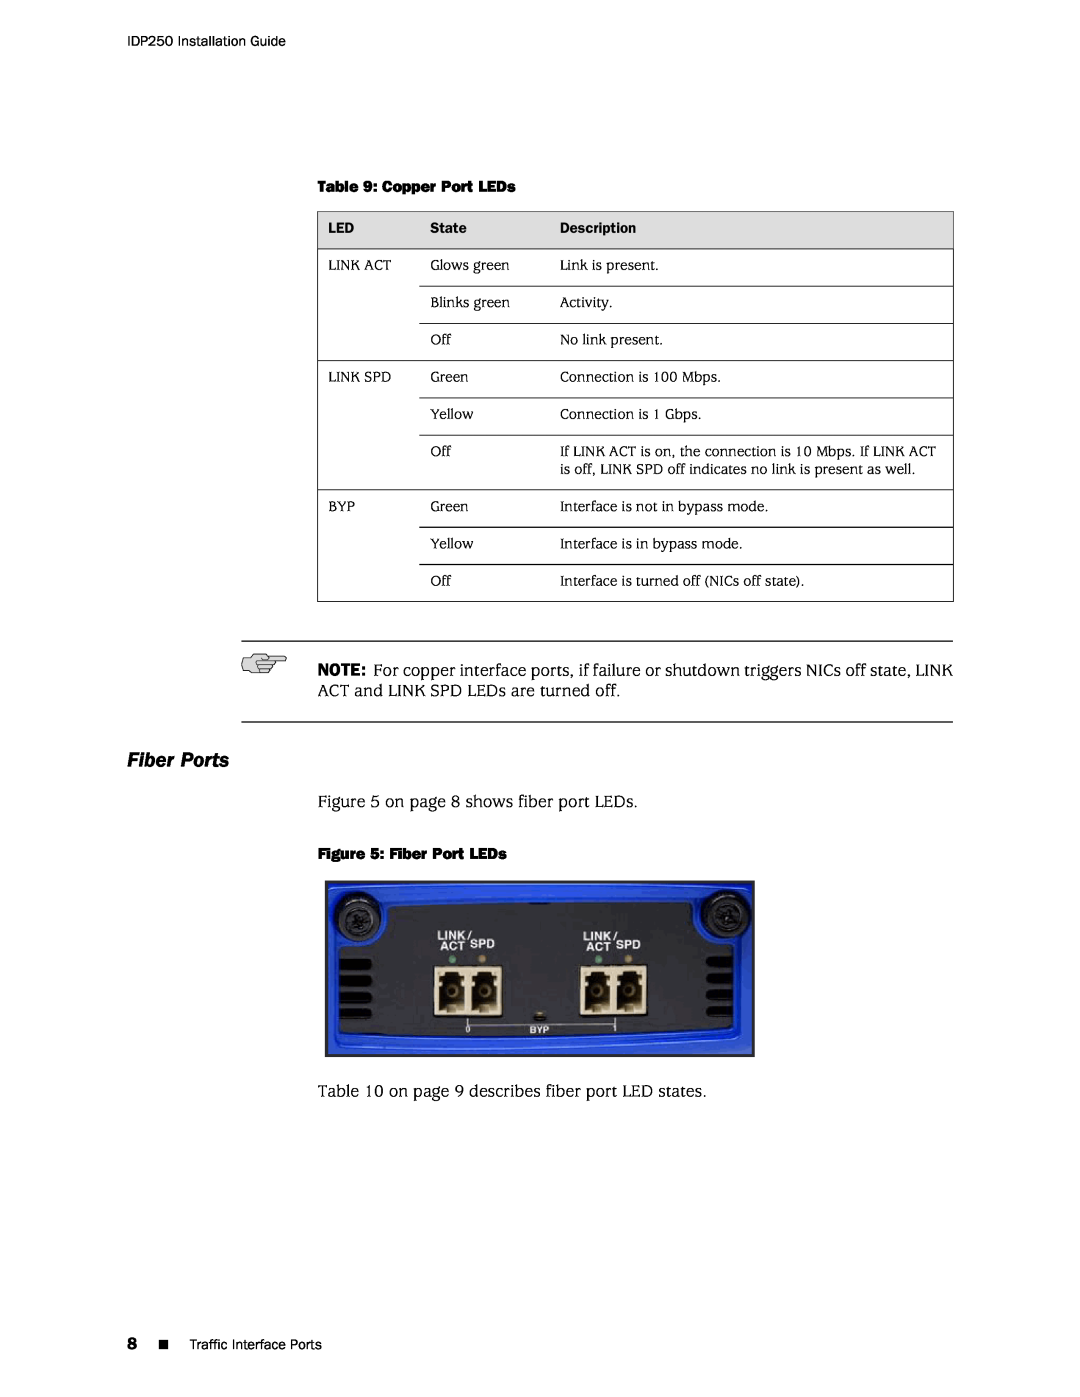 Juniper Networks IDP250 manual Fiber Ports 